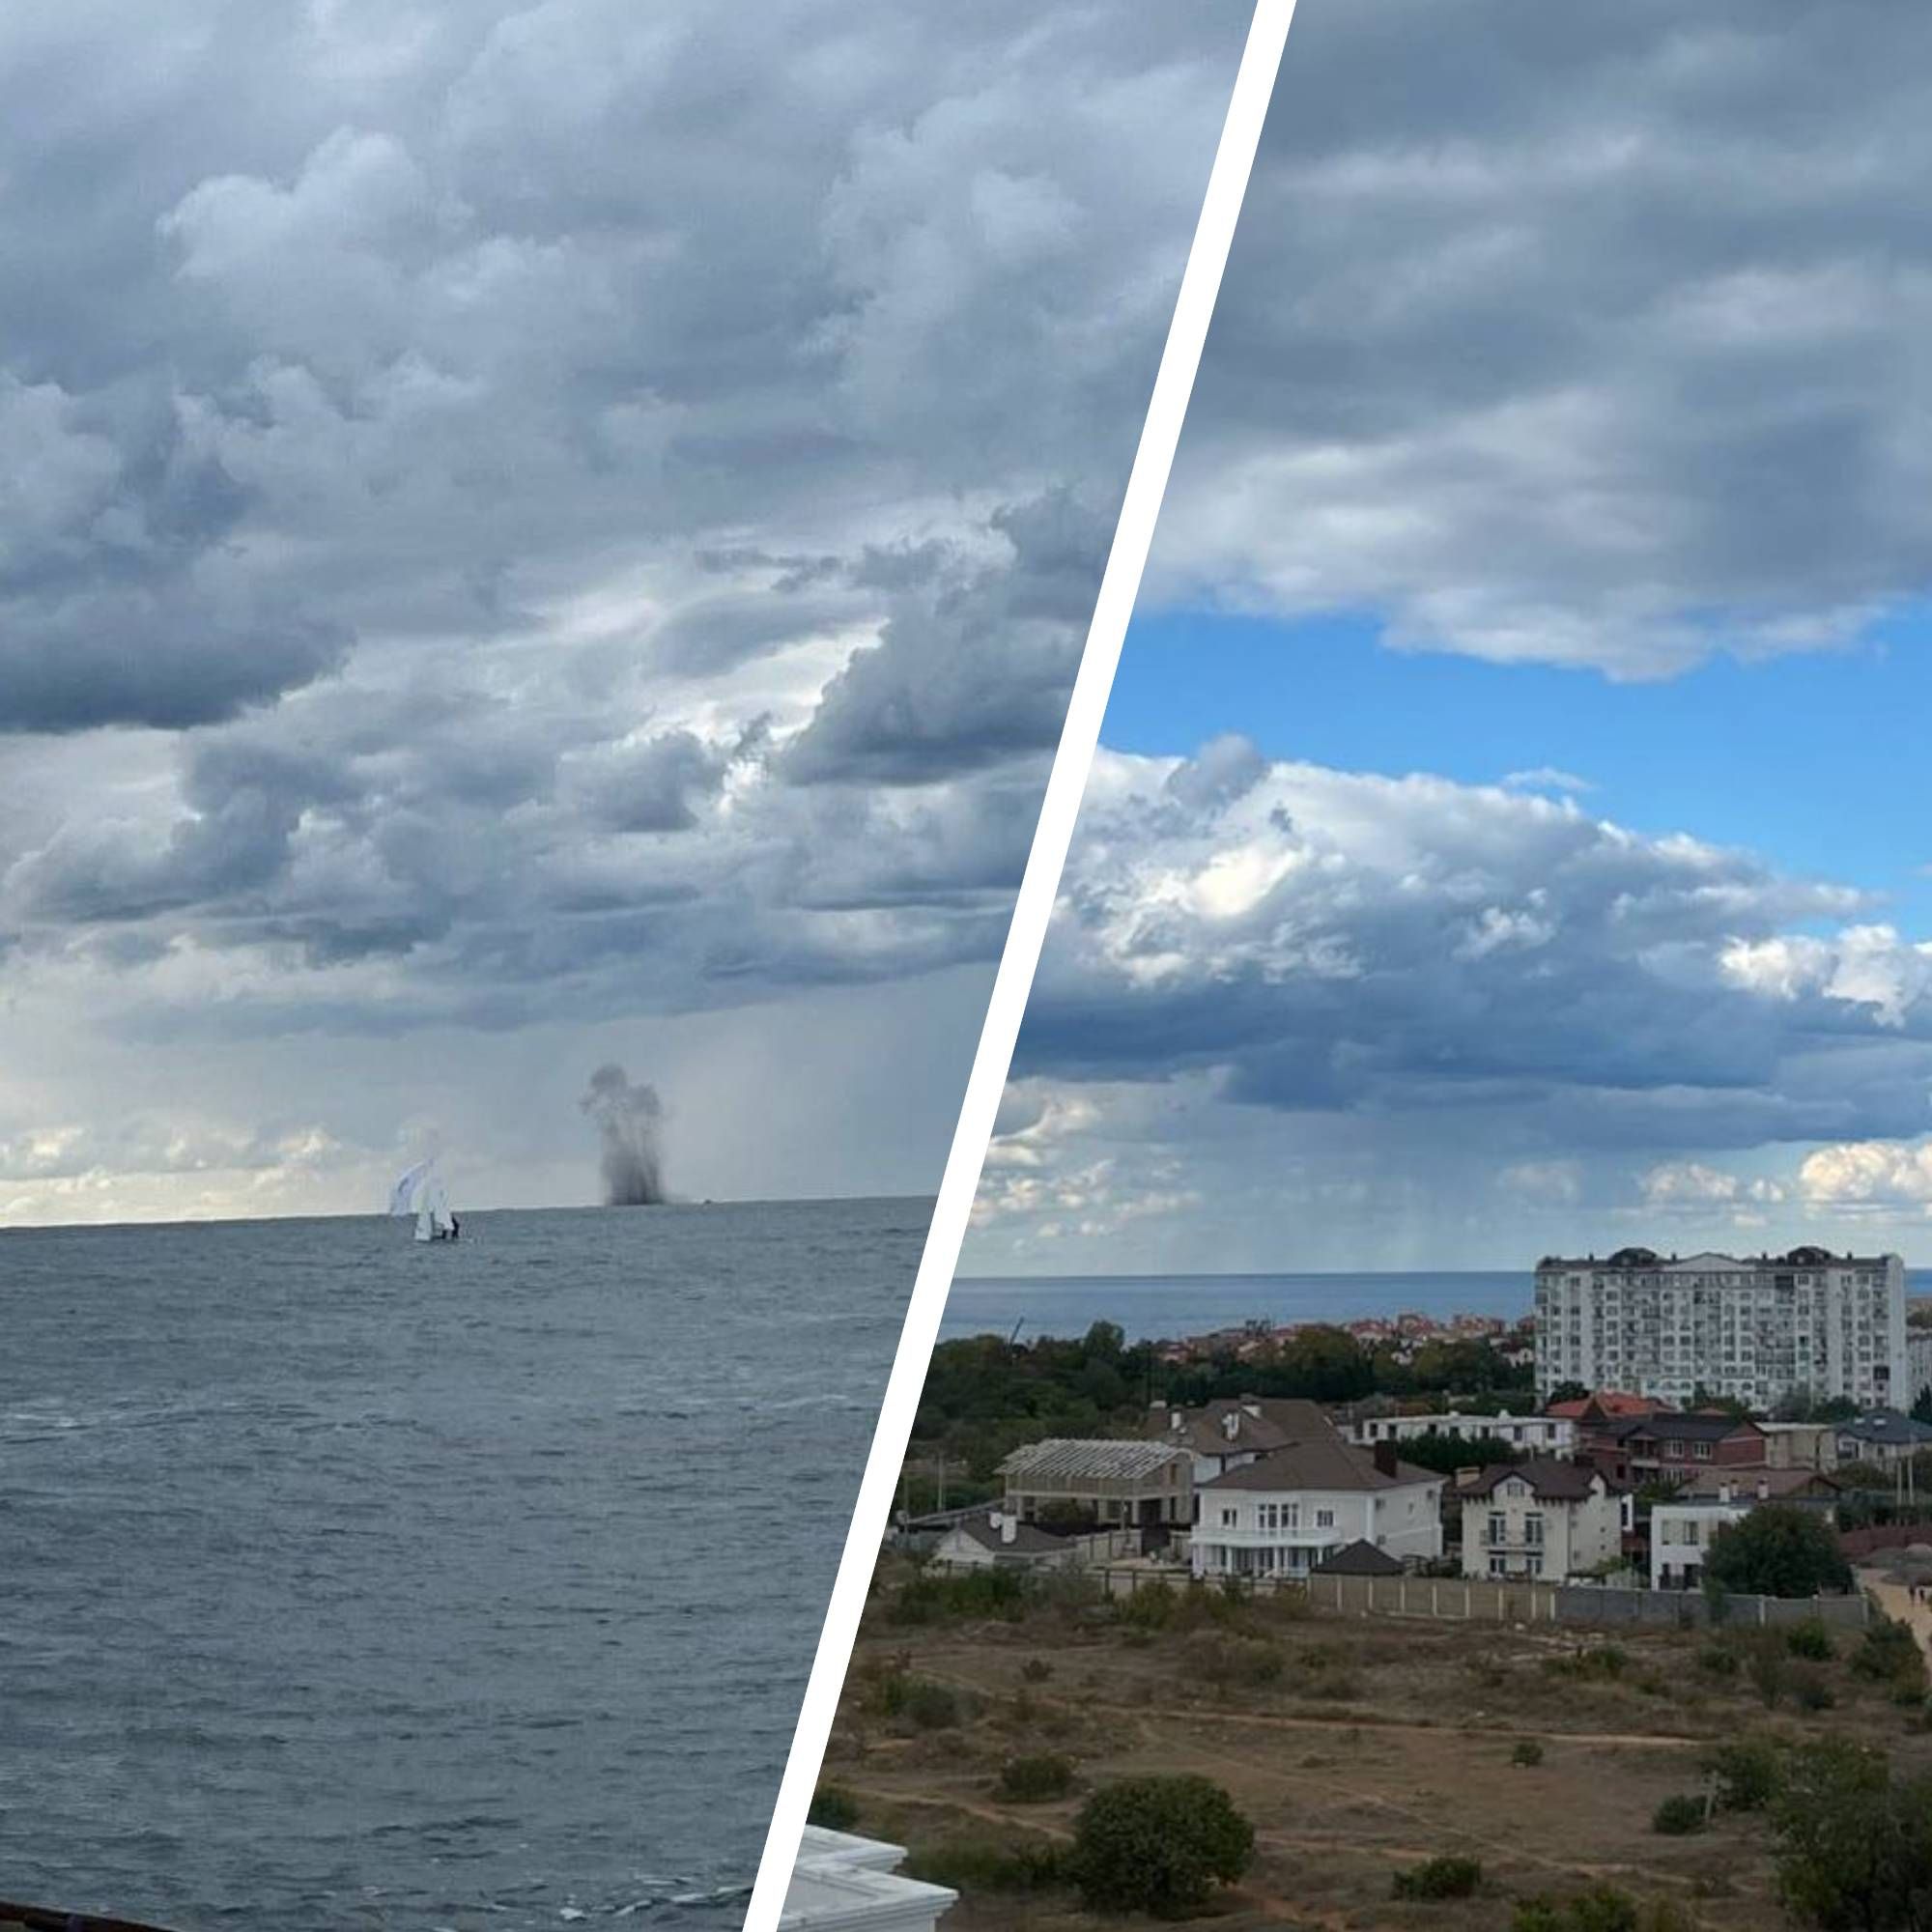 Севастополь - в море слышали громкий взрыв